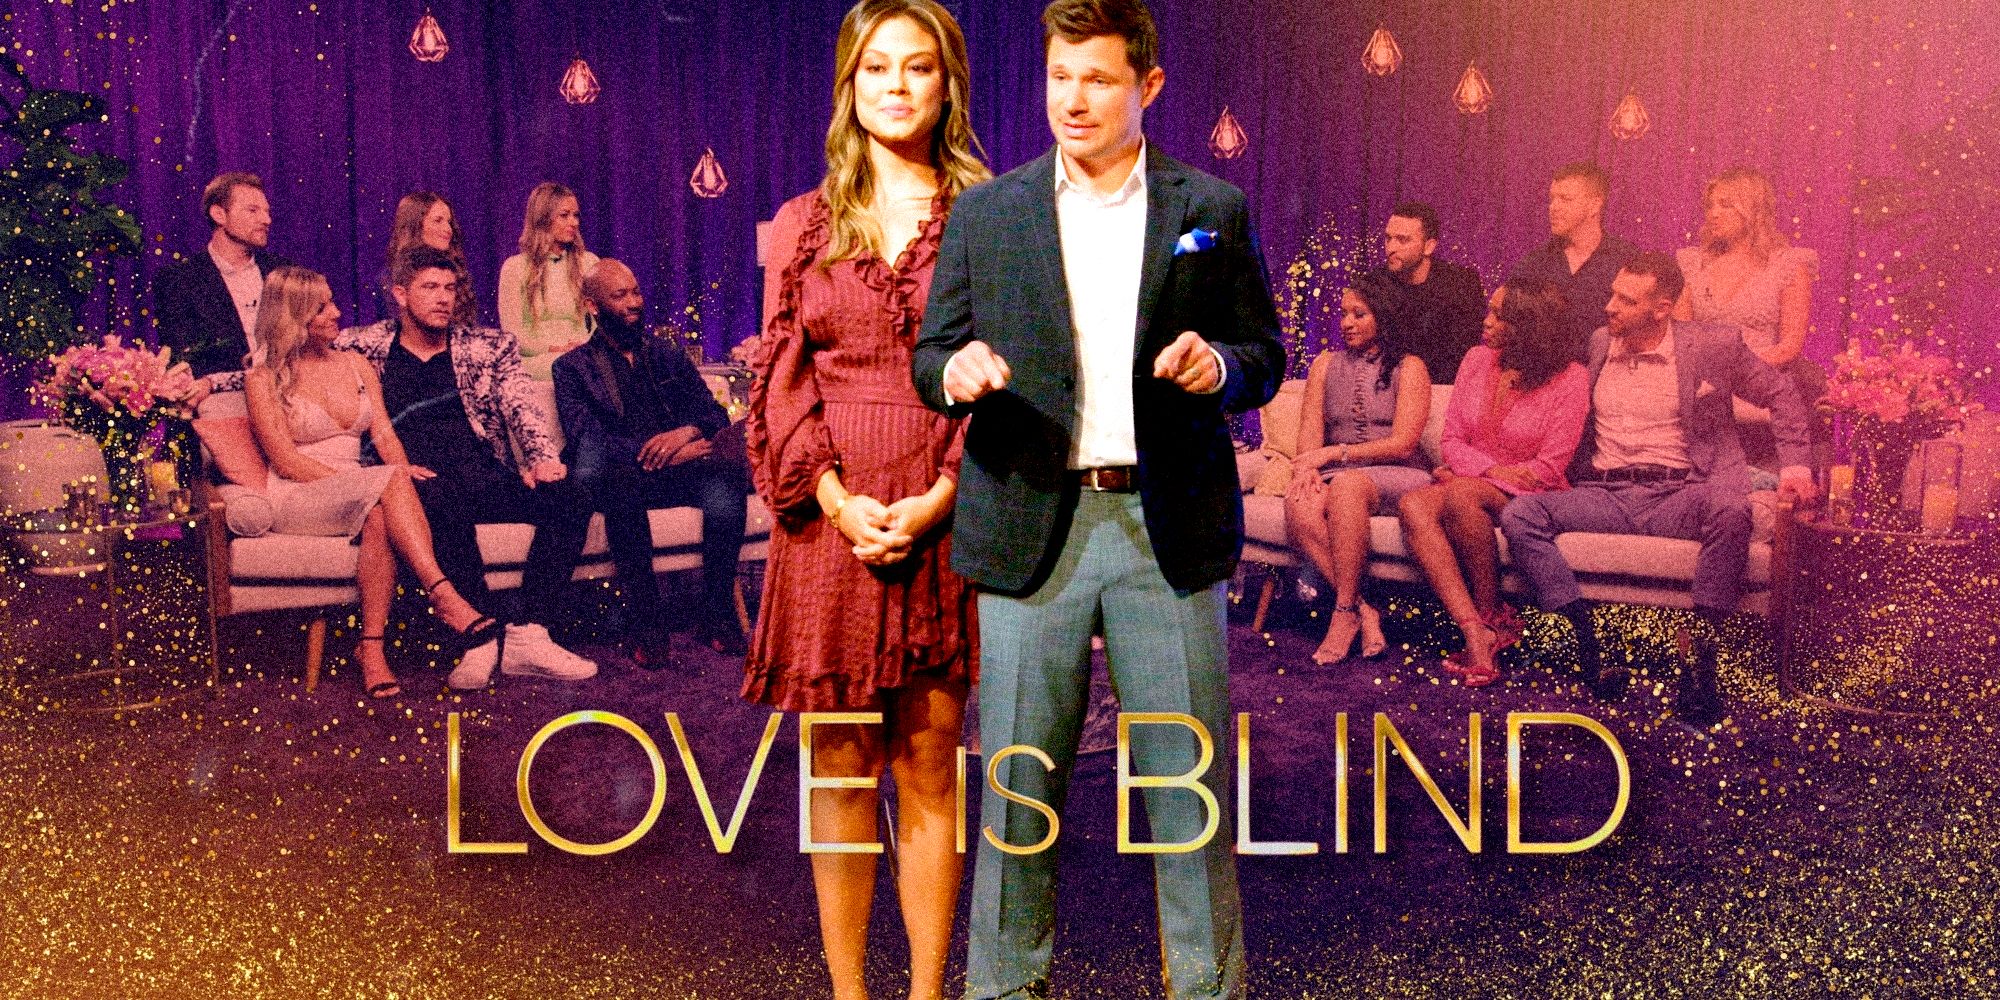 El tráiler de la temporada 6 de Love Is Blind muestra triángulos amorosos y una experiencia de cápsula “peligrosa”